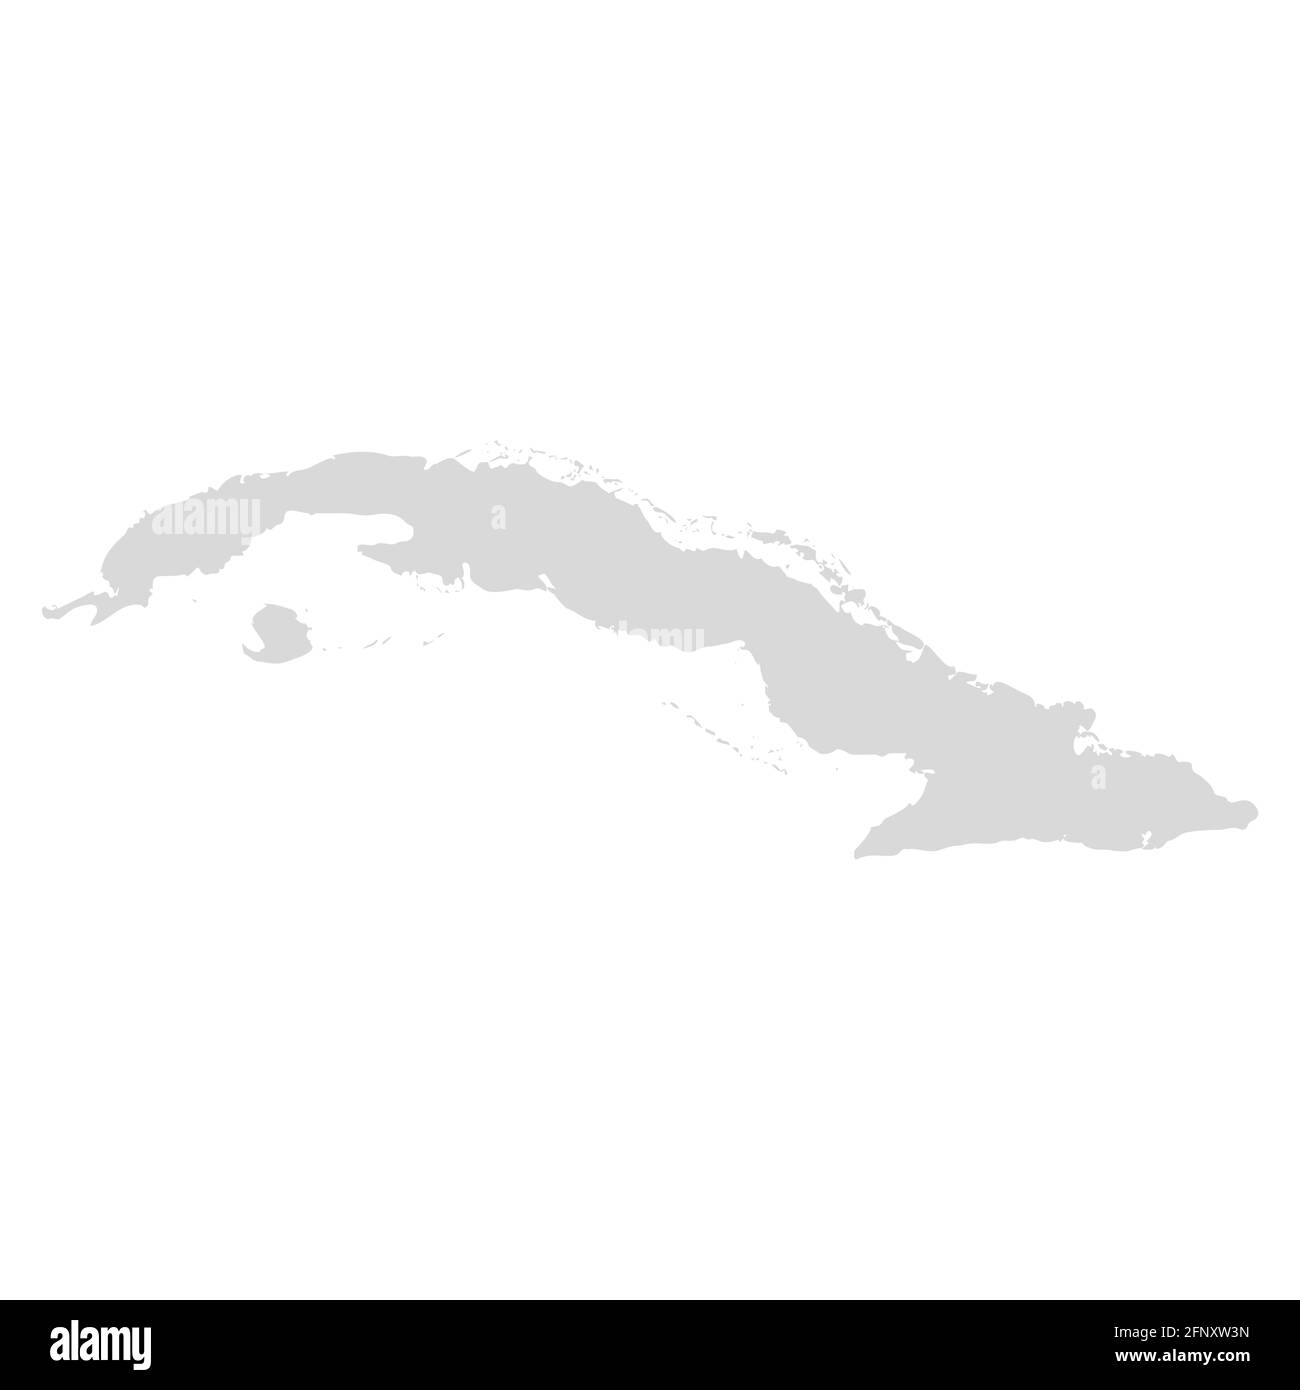 Cuba carte vectorielle. Bahamas zone des caraïbes cuba île la havane carte de la ville Illustration de Vecteur